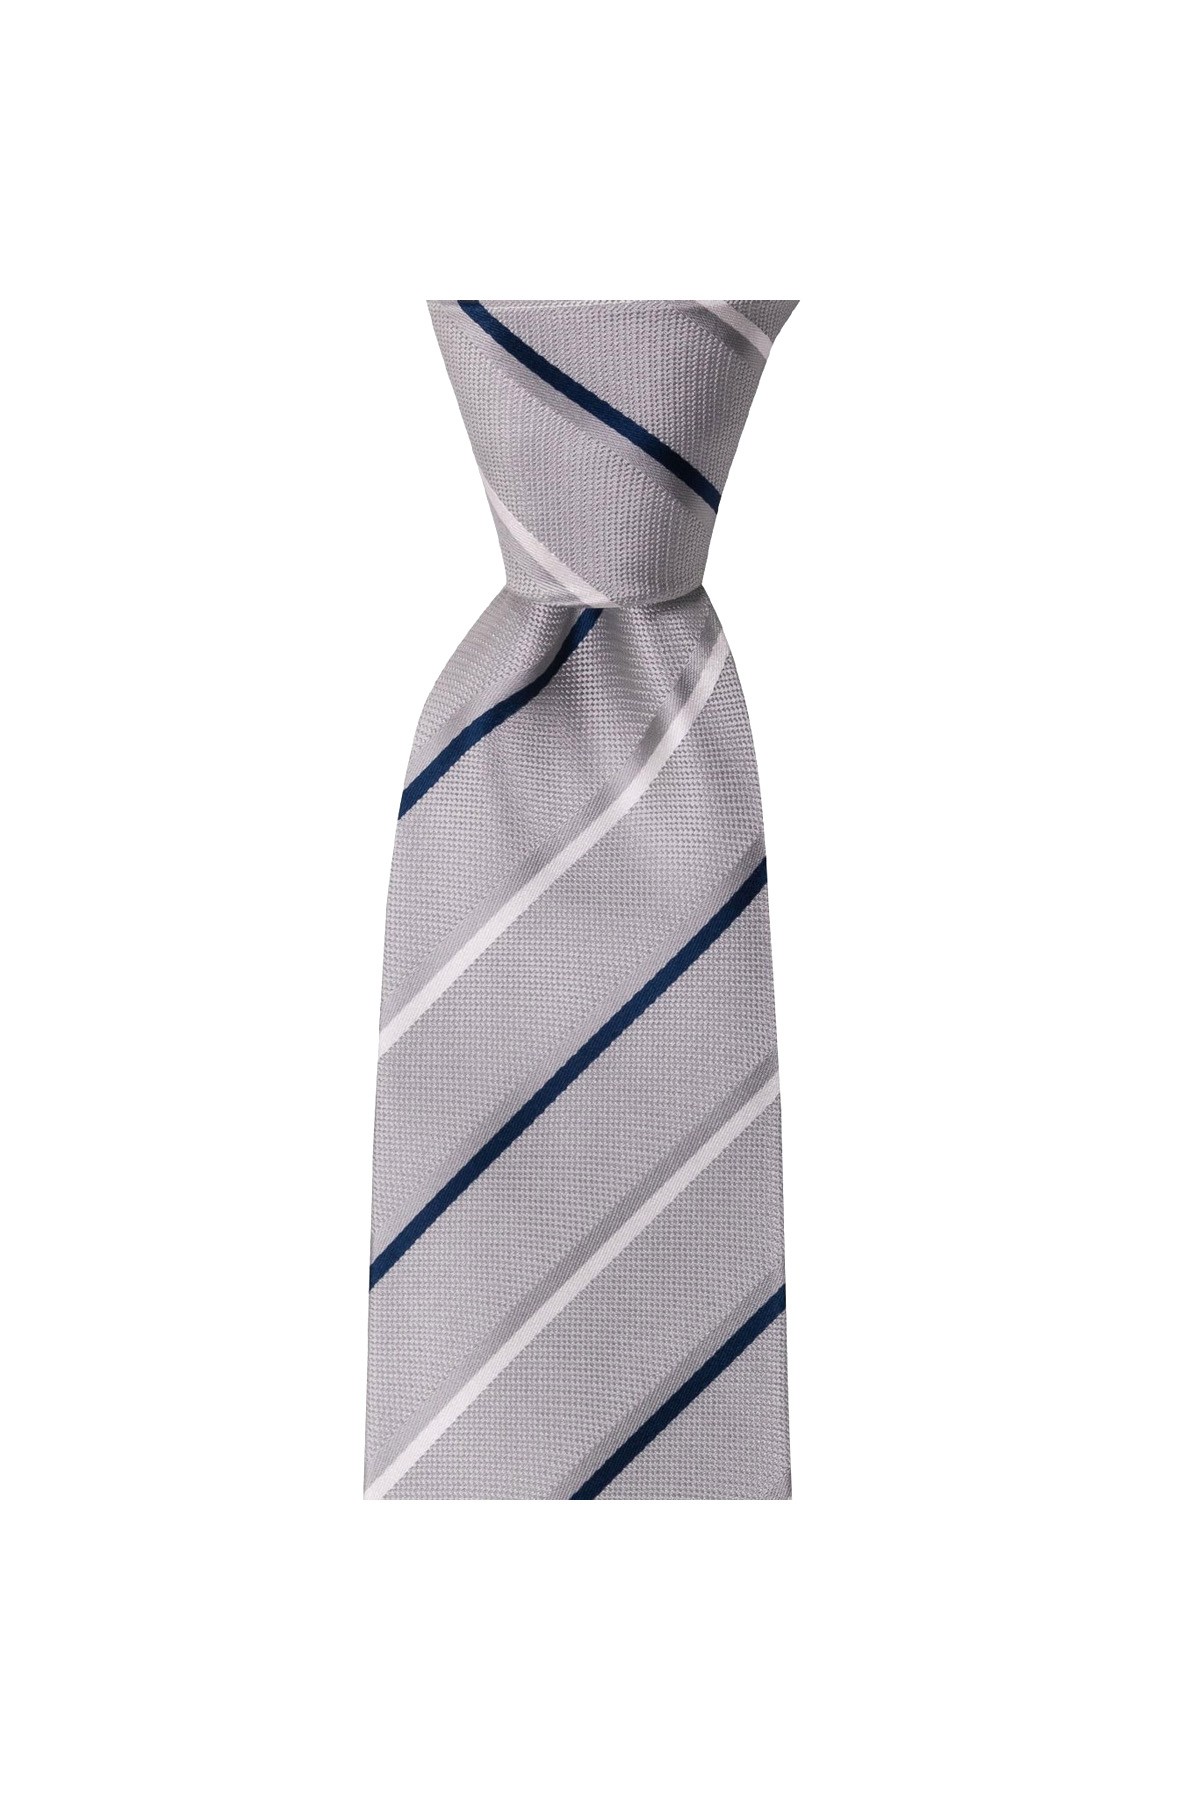 Çok çizgili 8 cm genişliğinde mendilli kravat